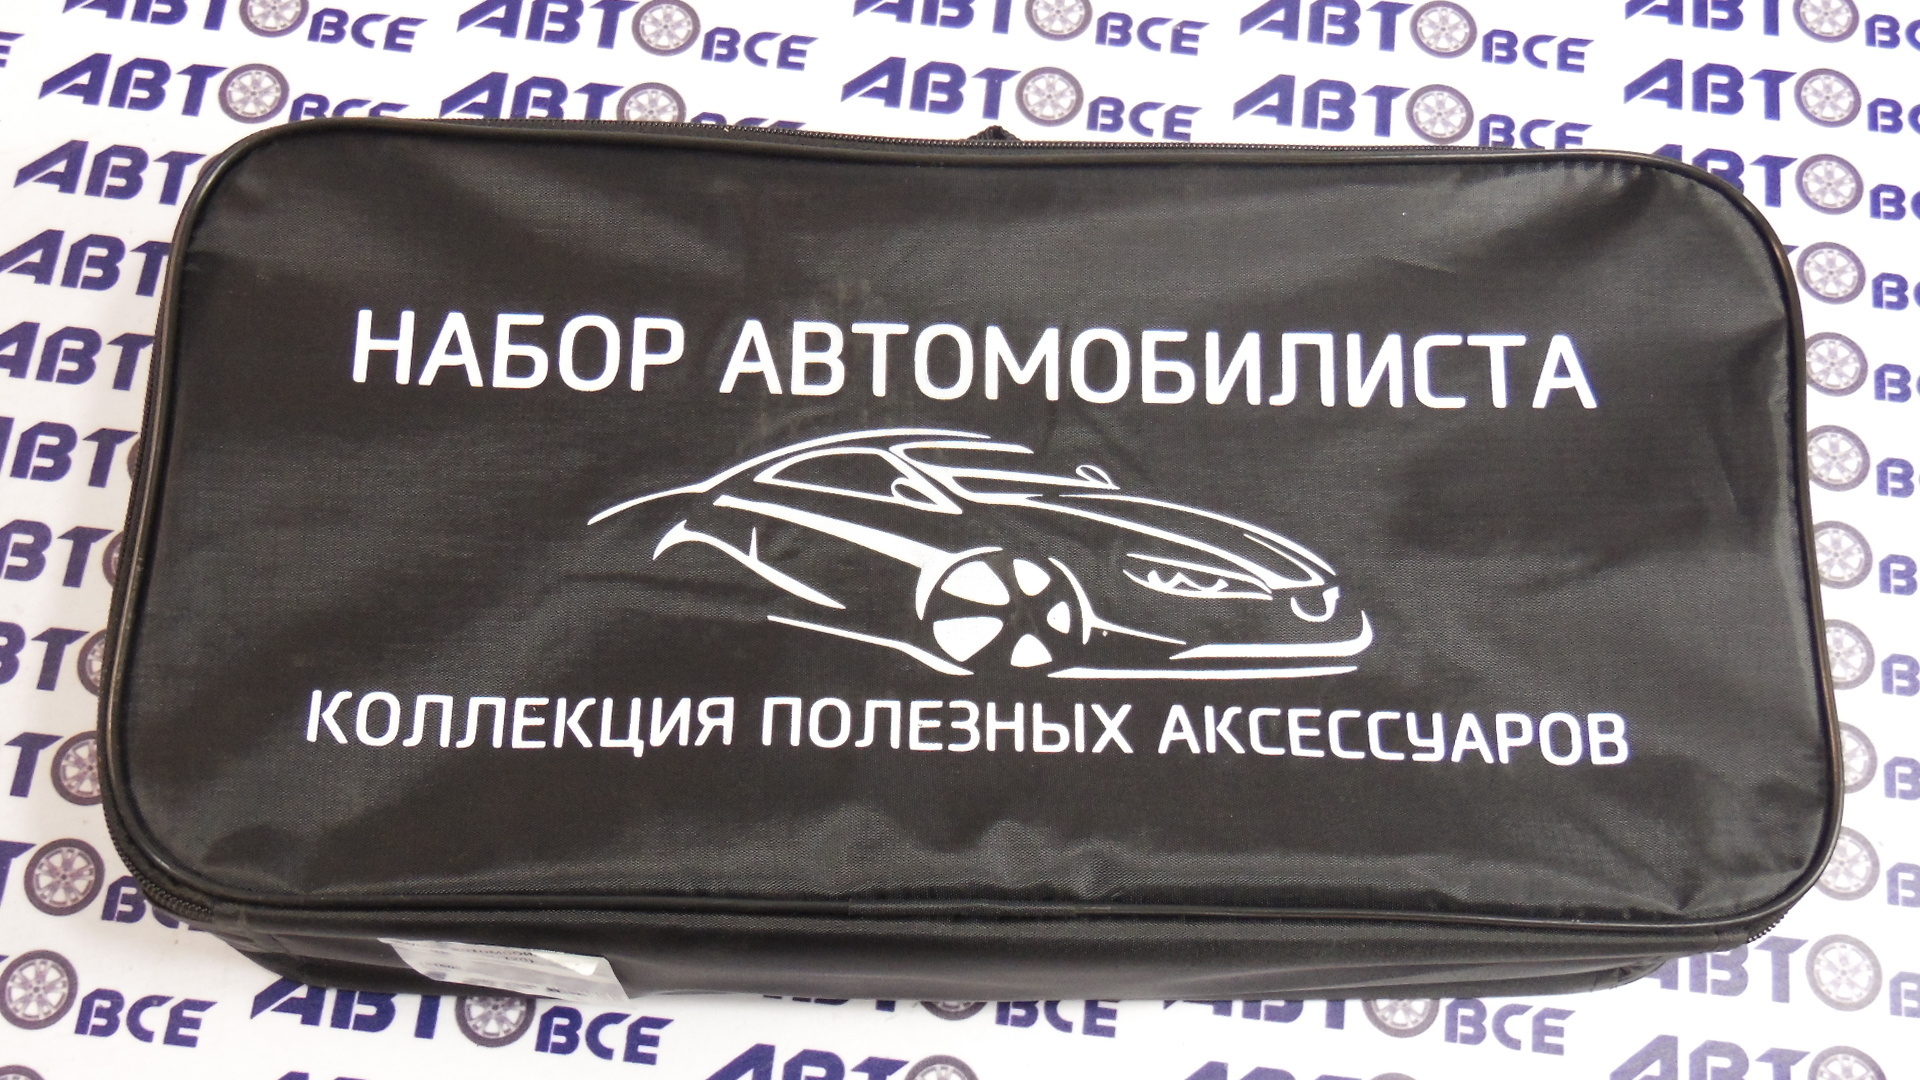 Сумка автомобилиста (20) Ставрополь